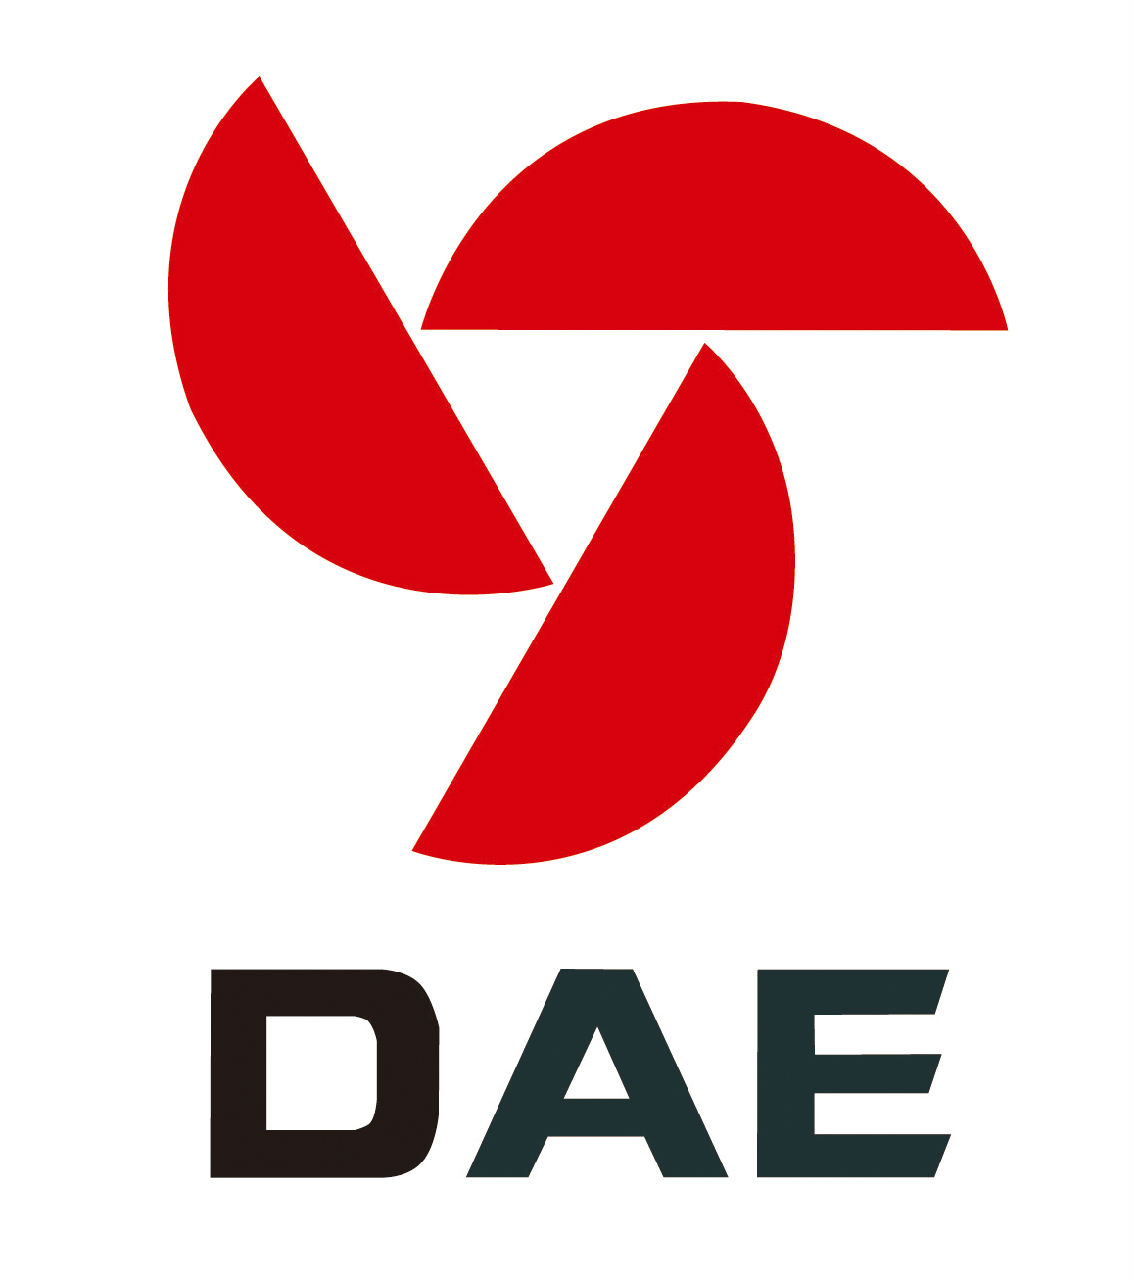 DAE(DAE是一種3D模型)